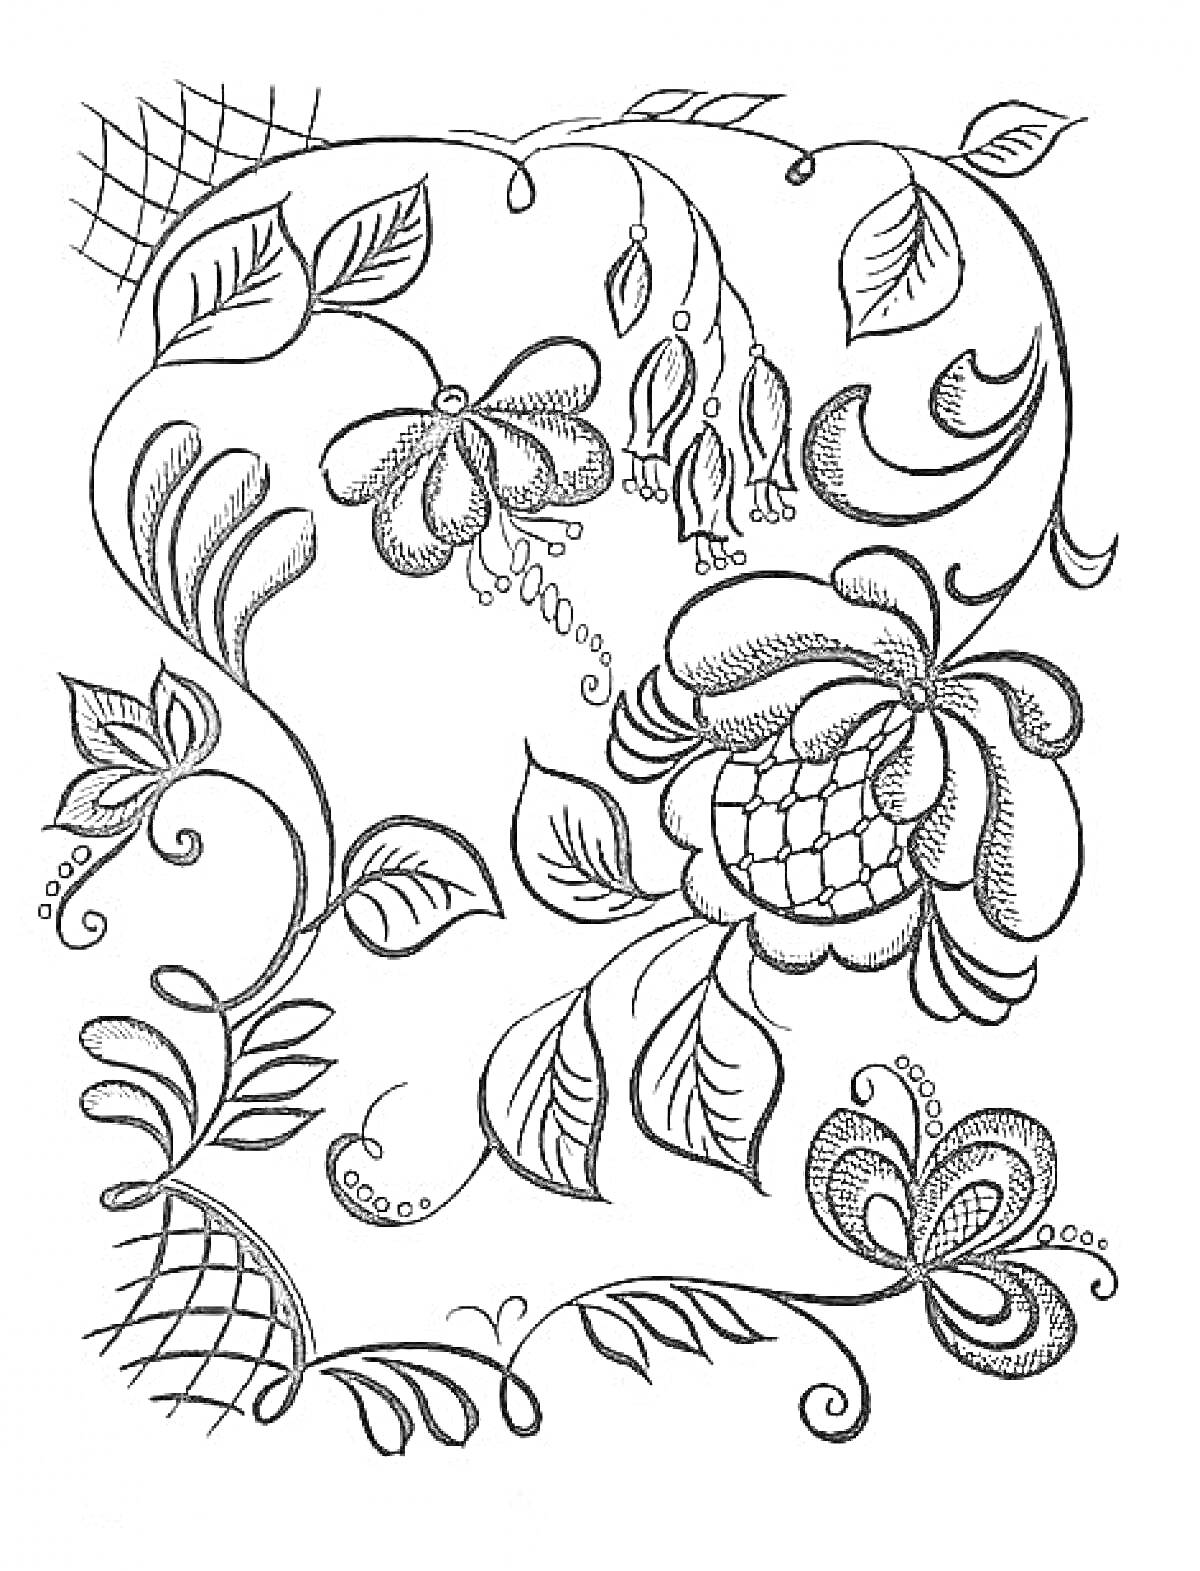 Раскраска Растительный орнамент Хохломы с цветами, листьями и завитками